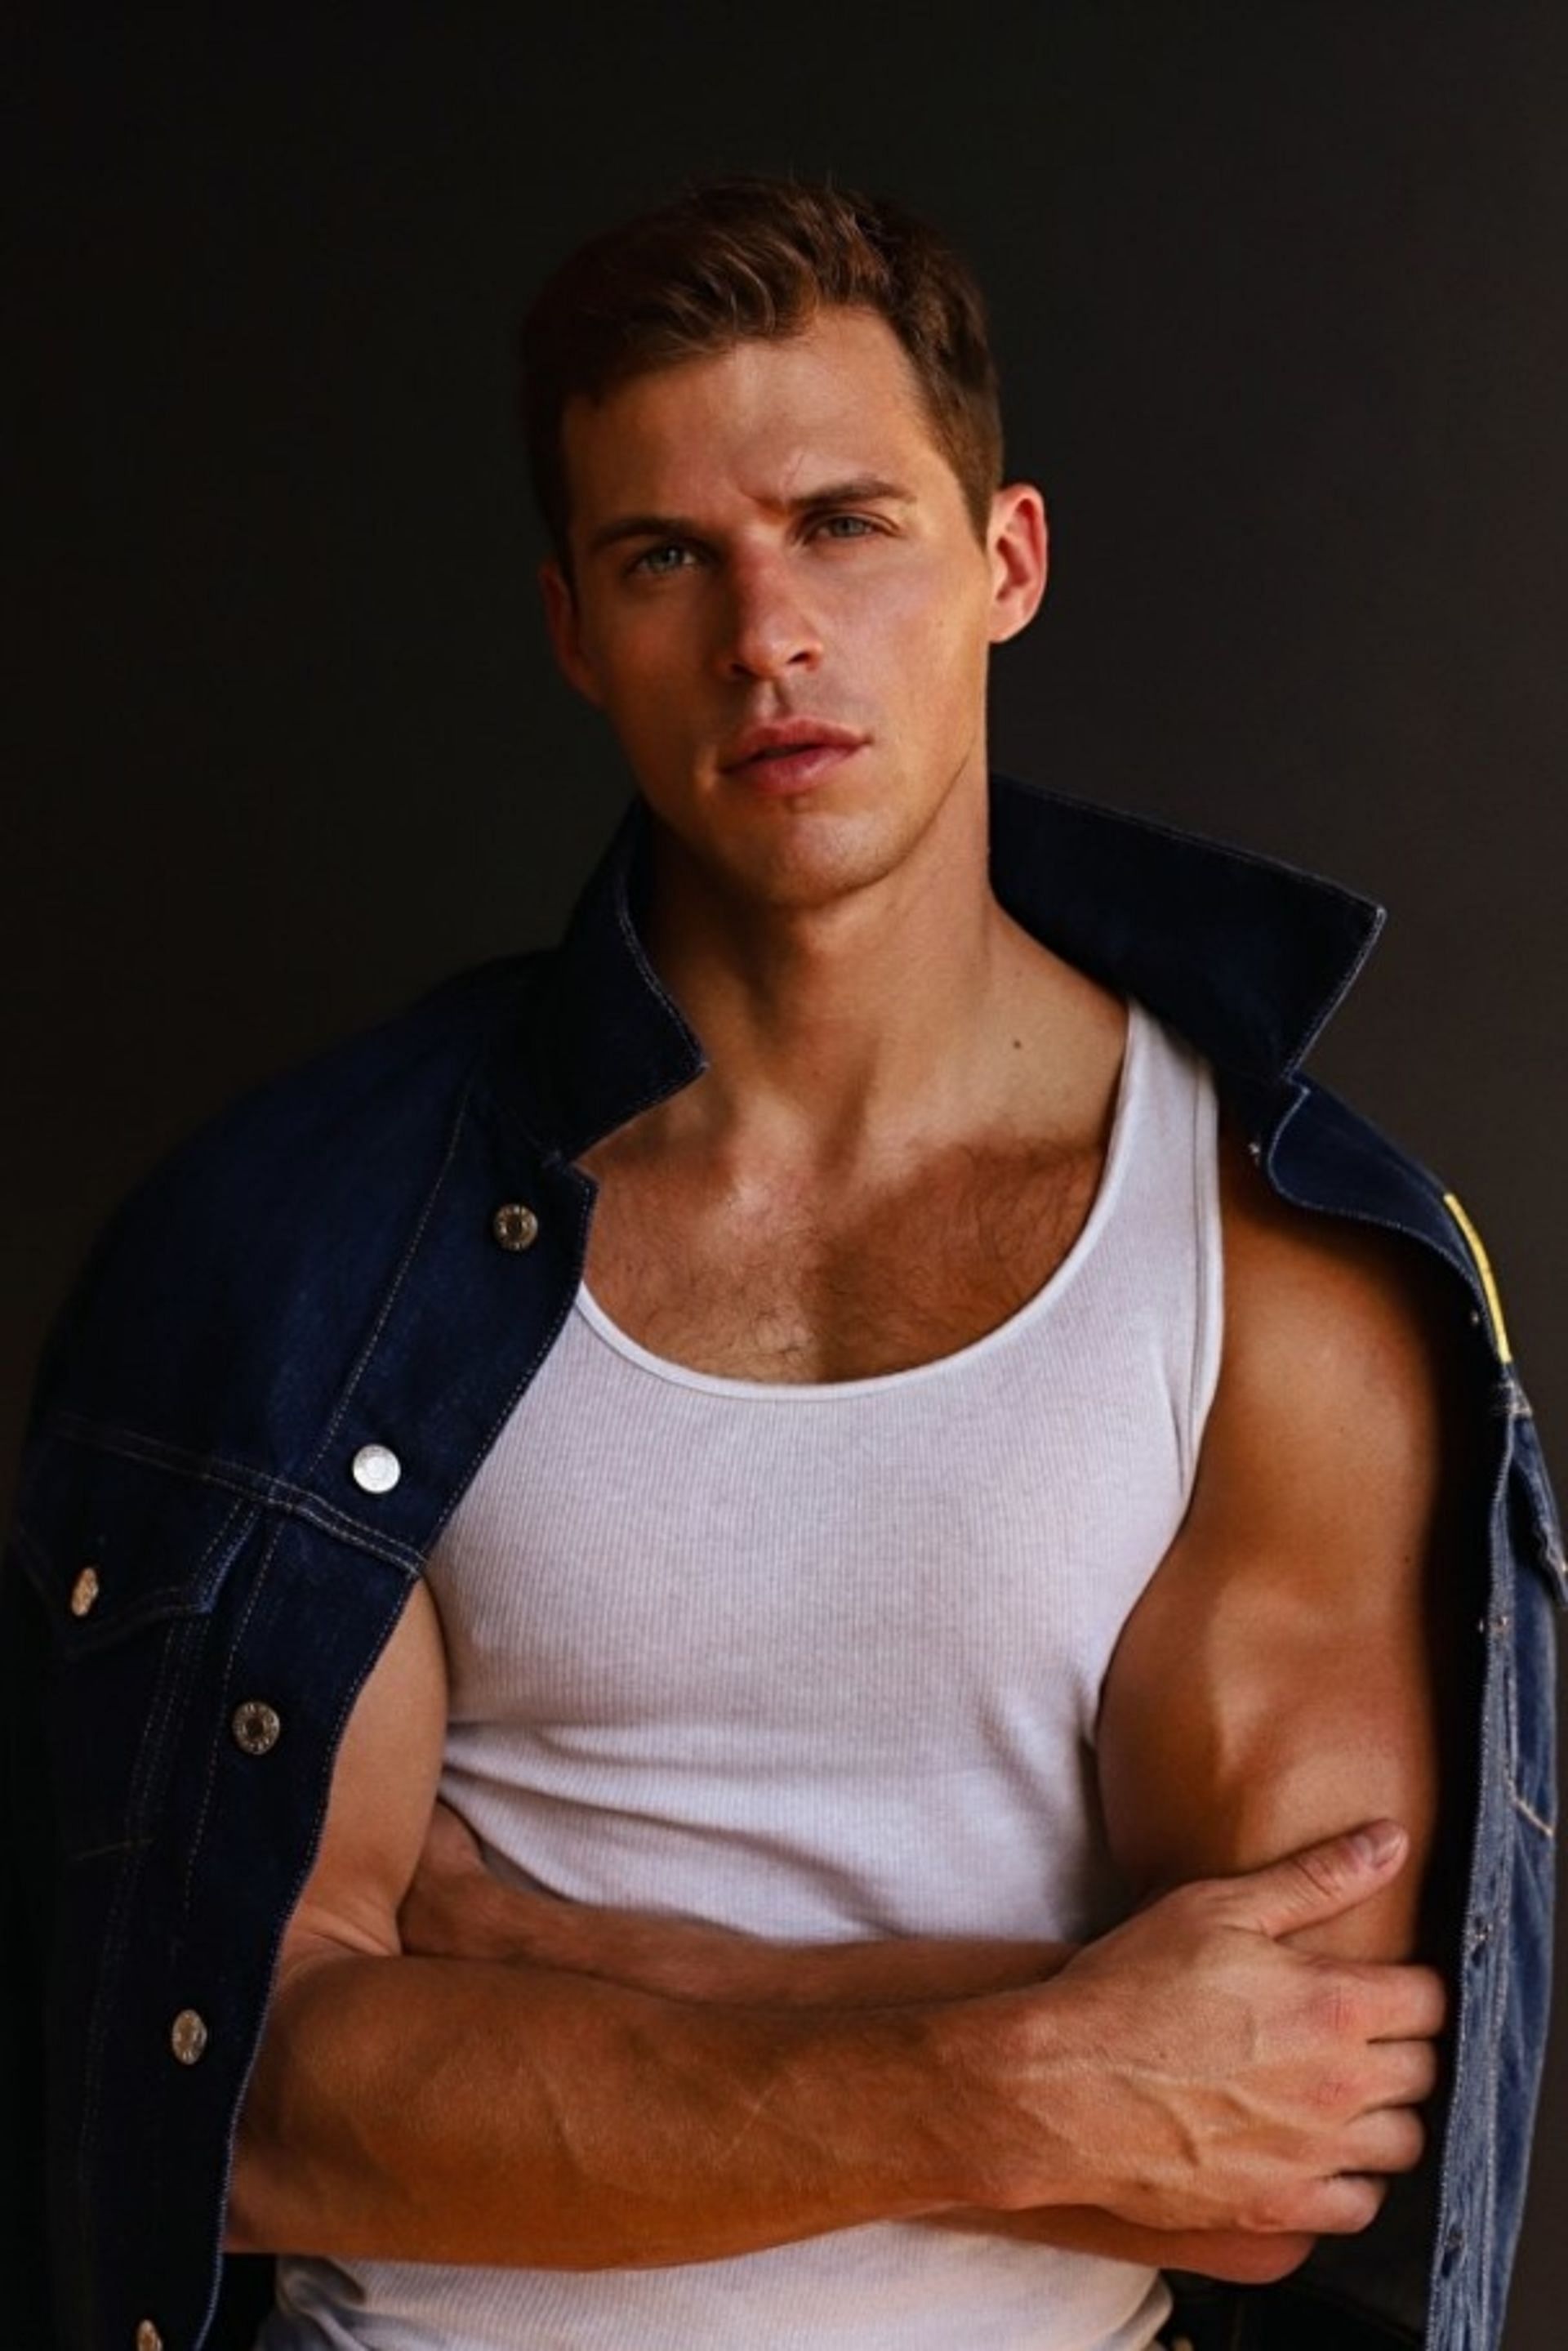 Dylan Andrews (Image via Select Model Management)